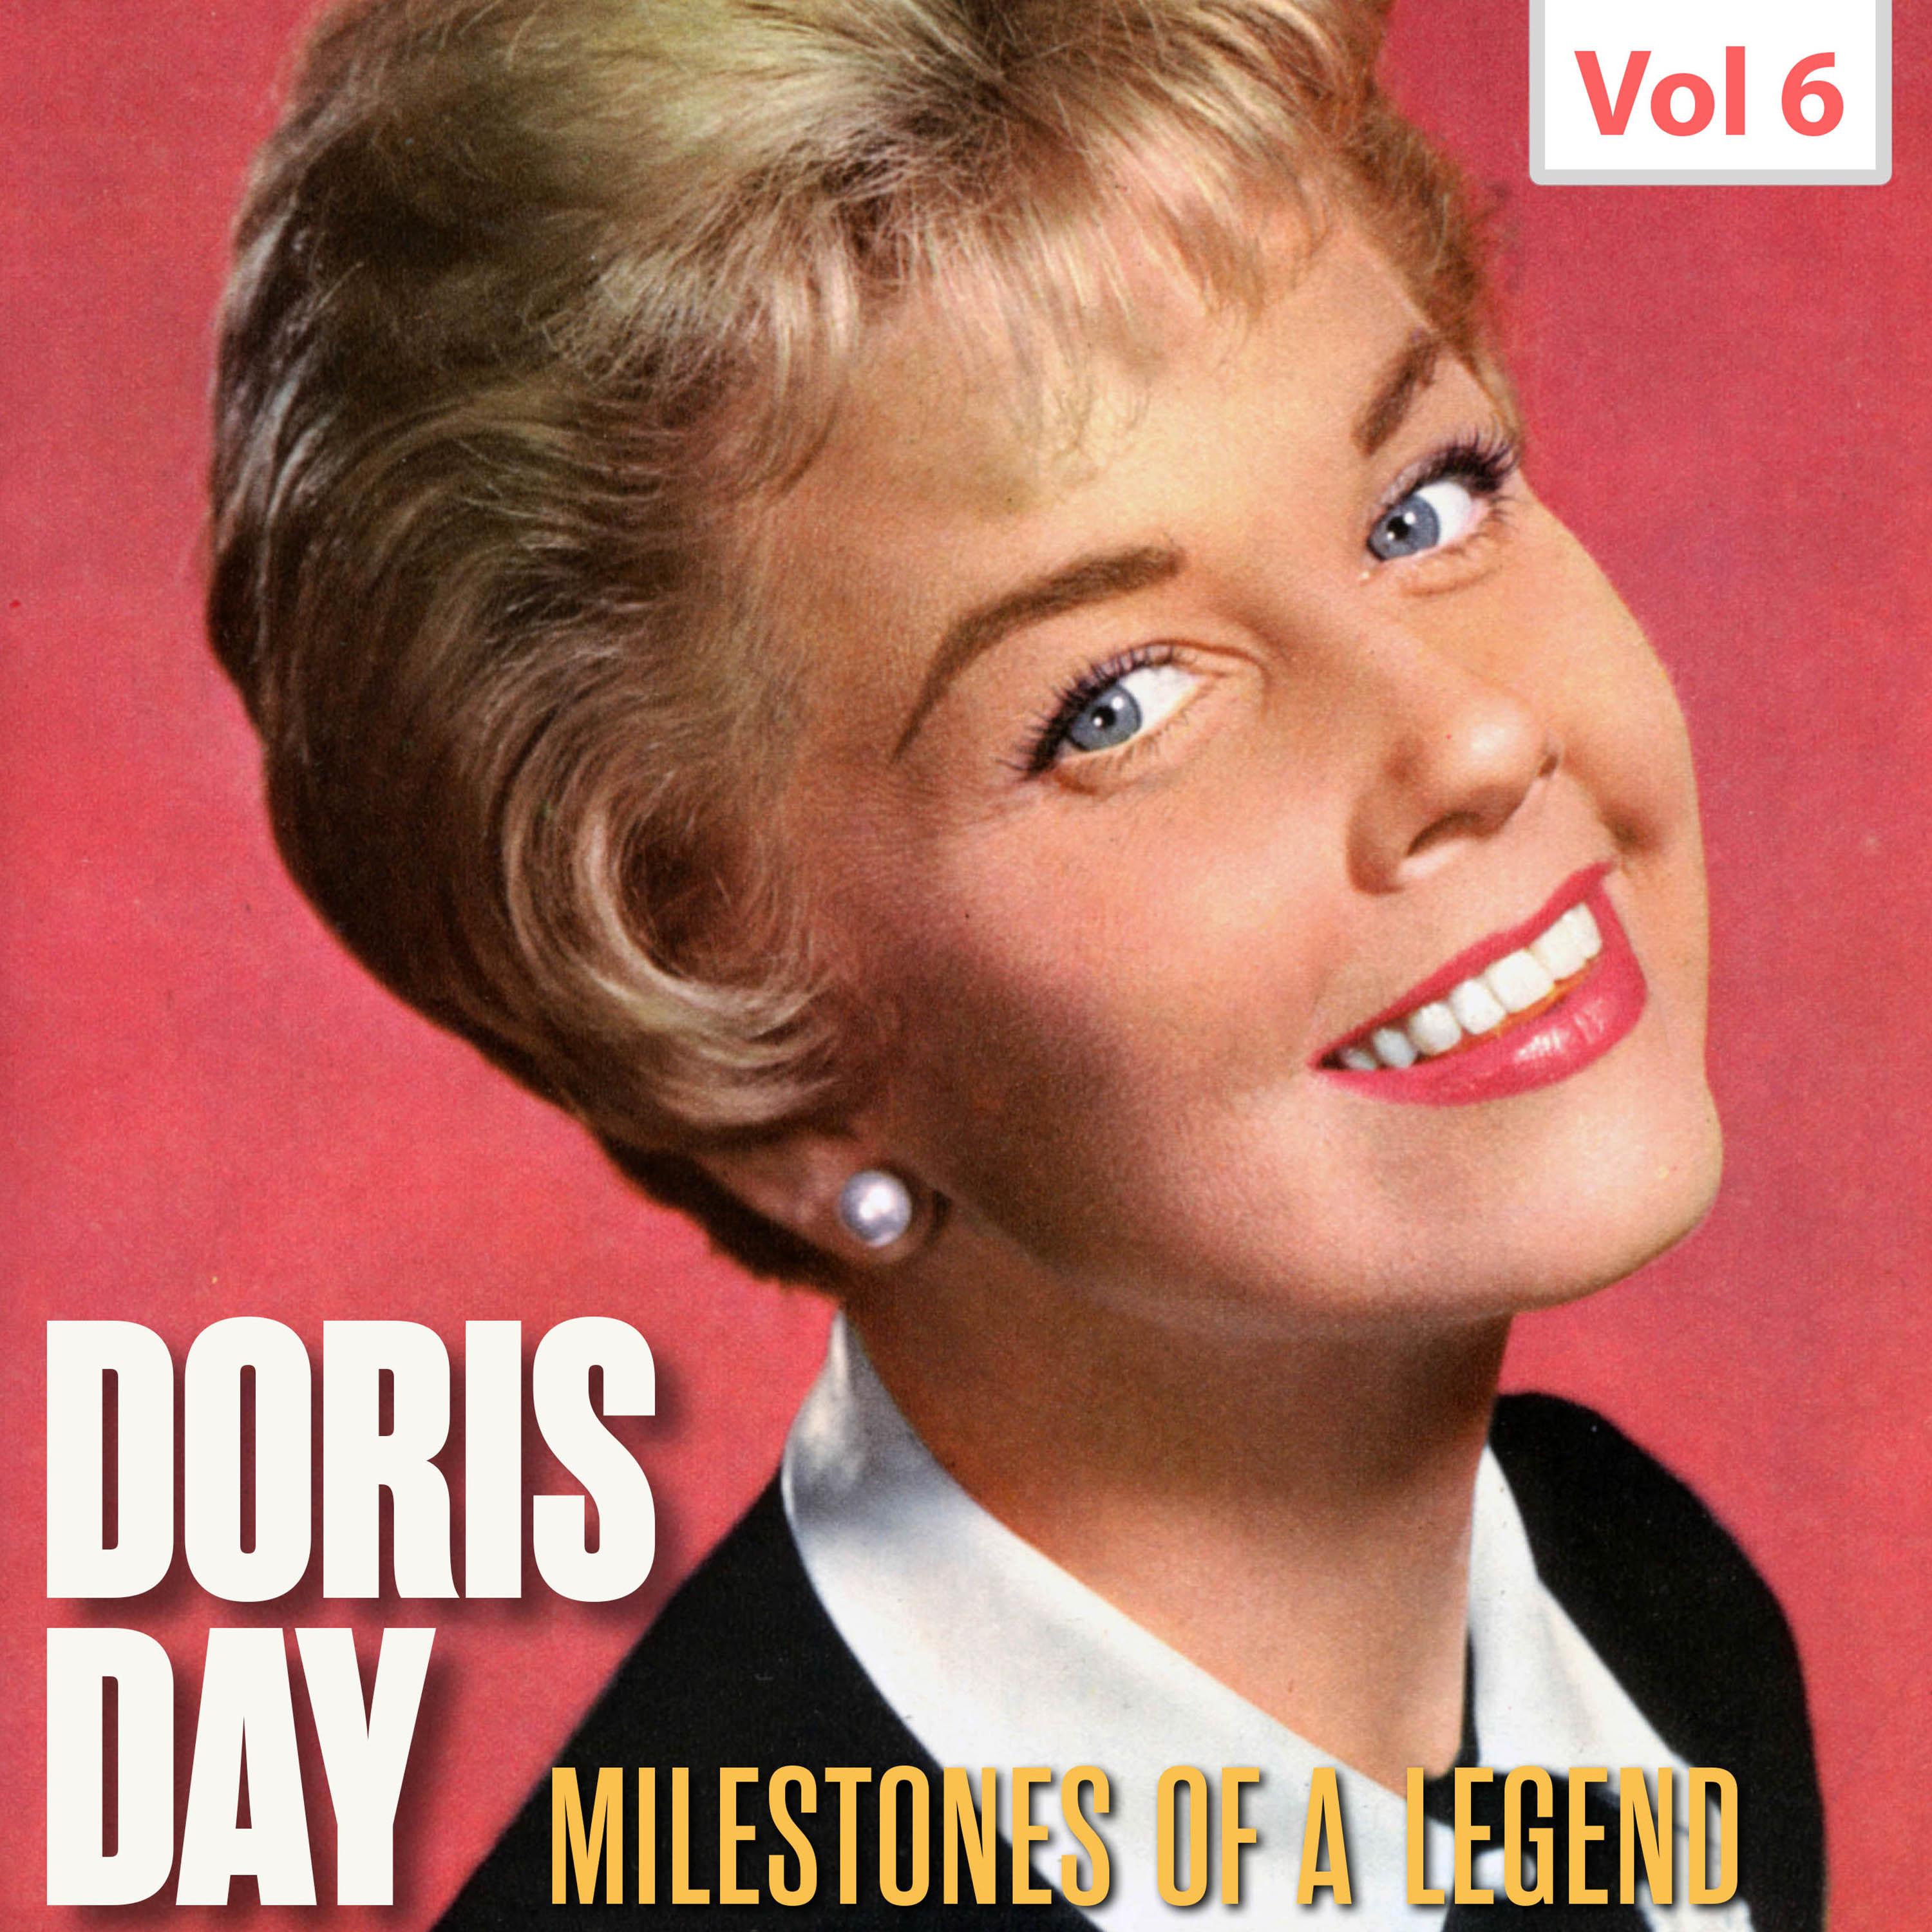 Milestones of a Legend - Doris Day, Vol. 6